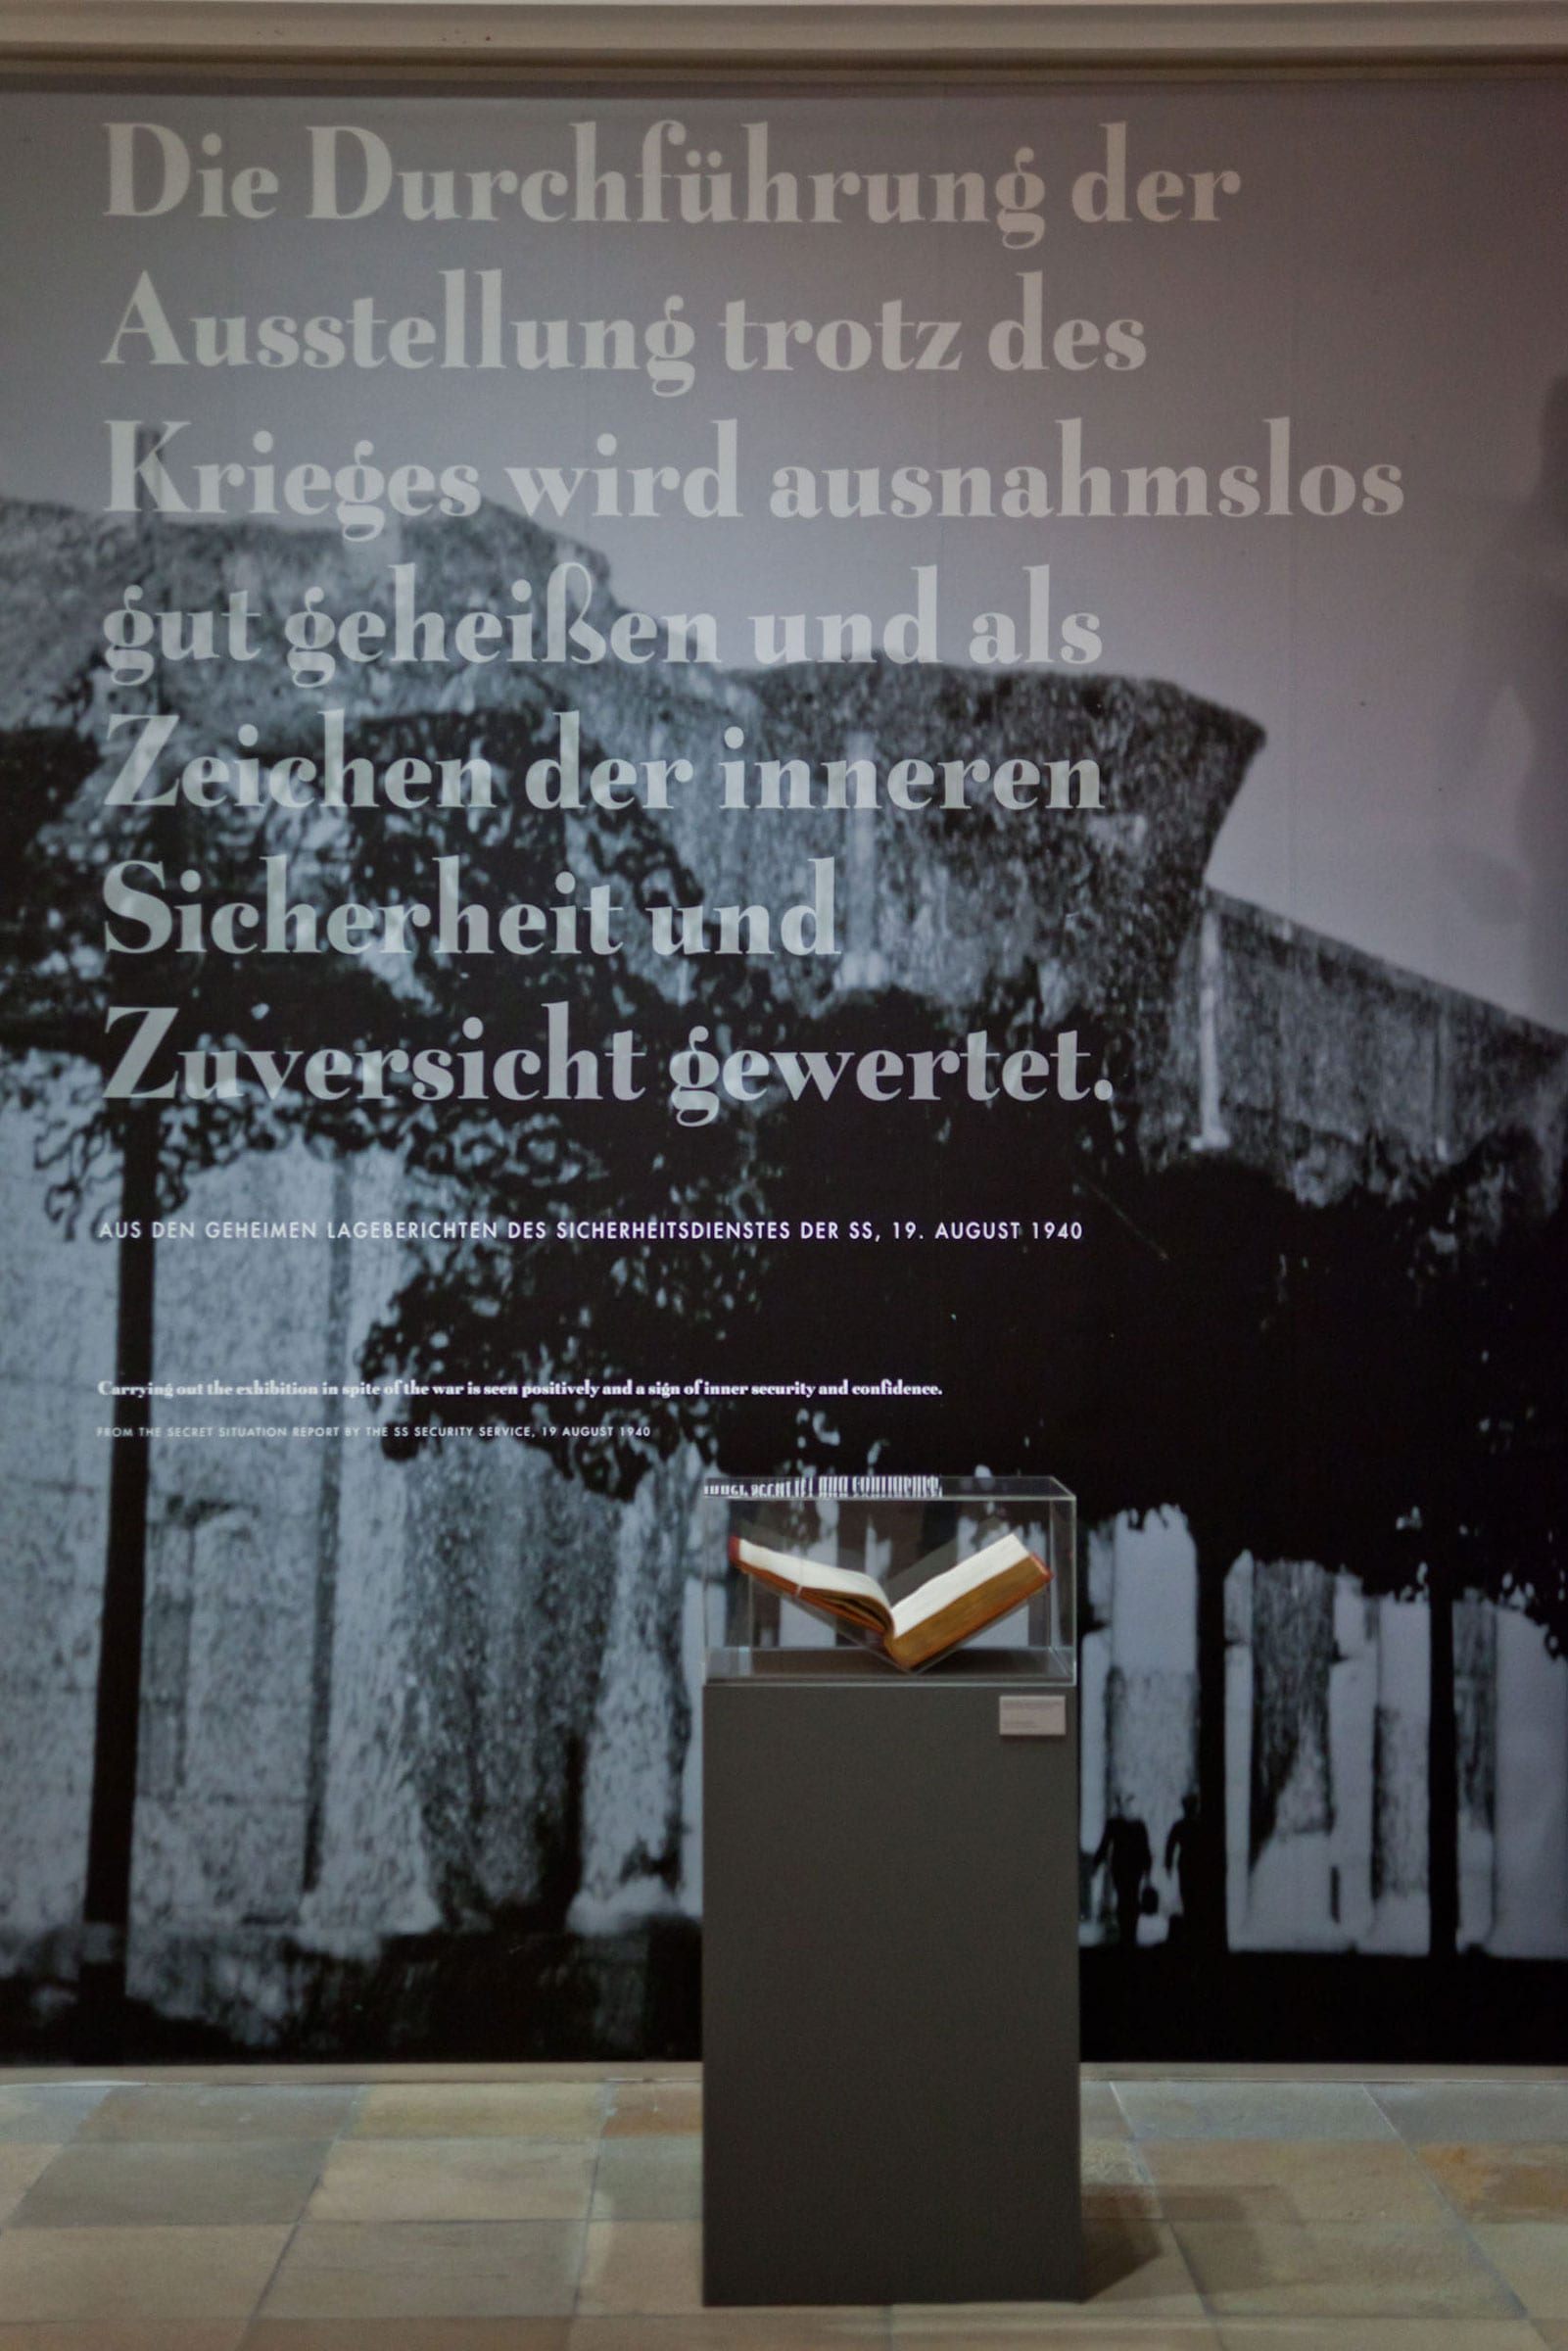 Gebr. Silvestri Haus der Kunst Munich – Christian Philipp Müller – ‘Histories in Conflict’